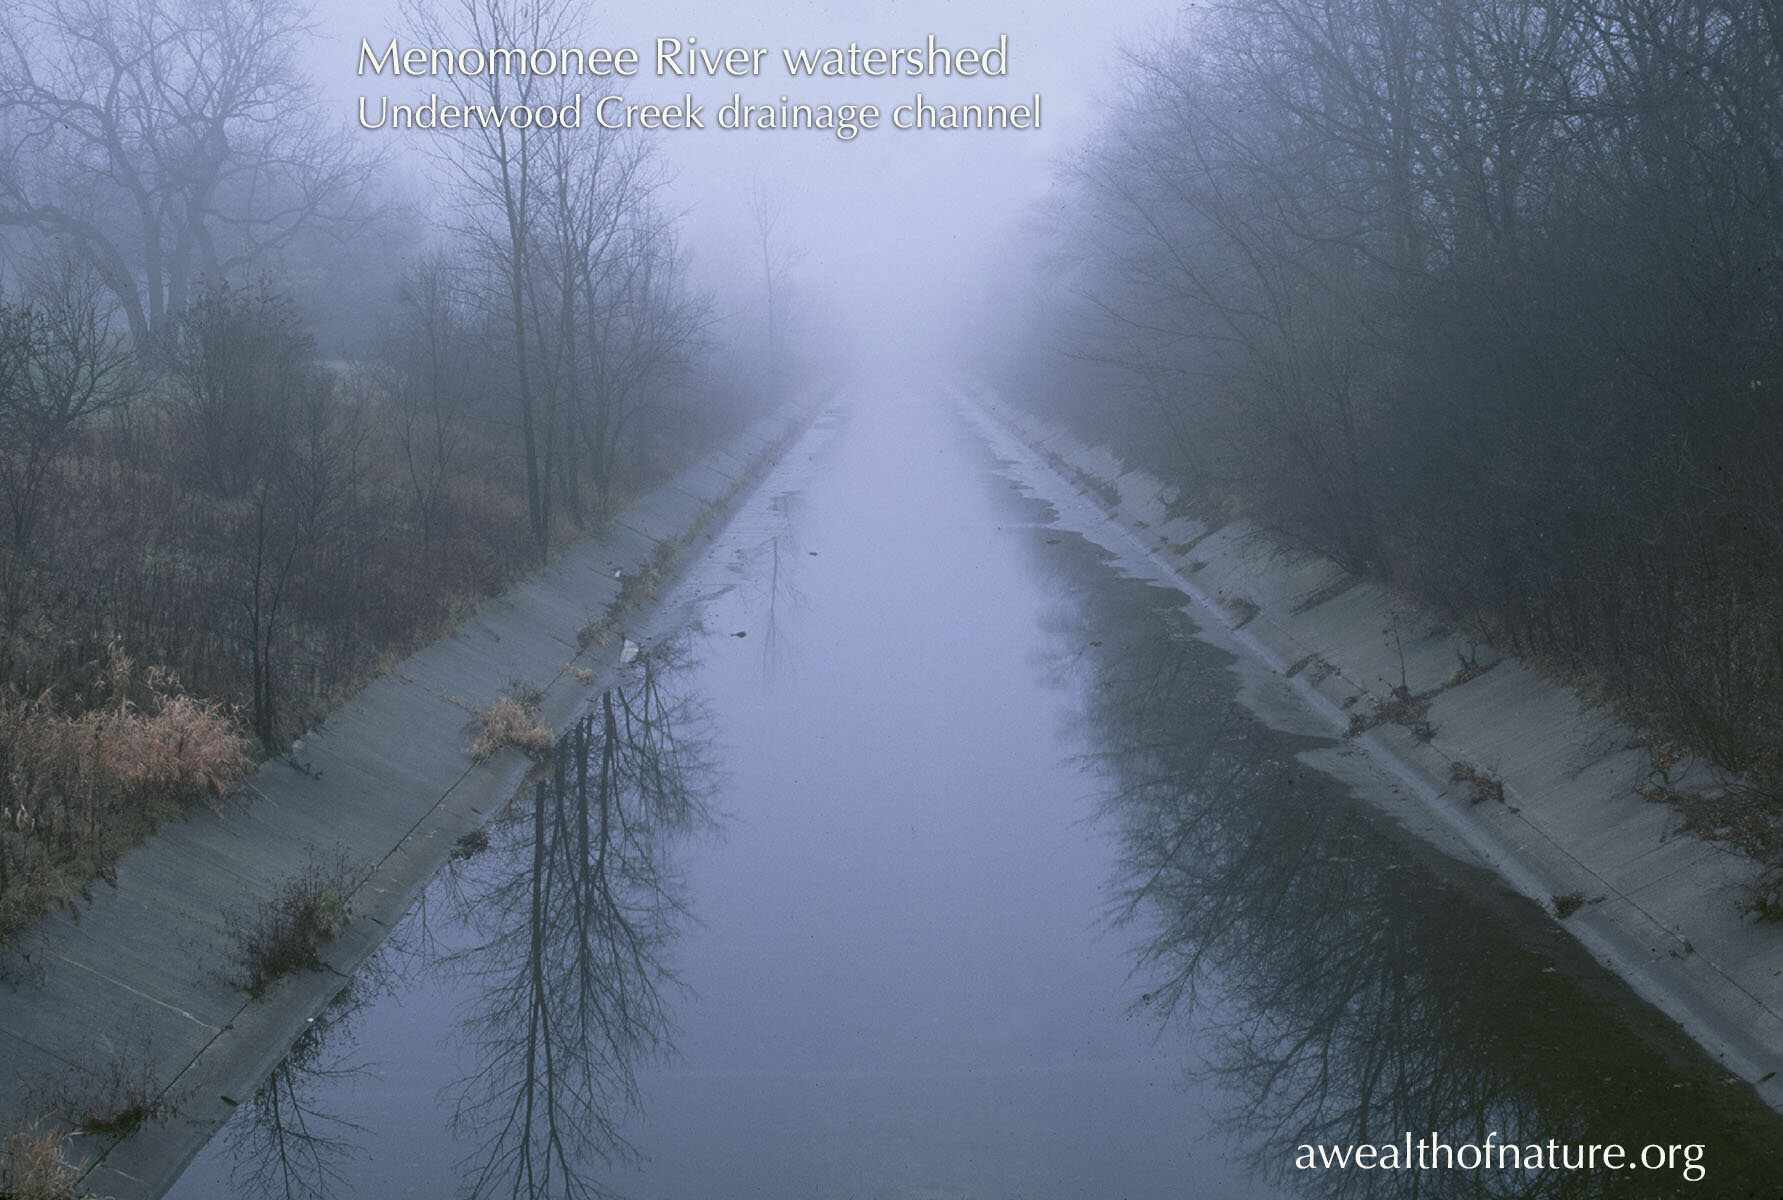 EDaniel_underwood channel in fog.jpg